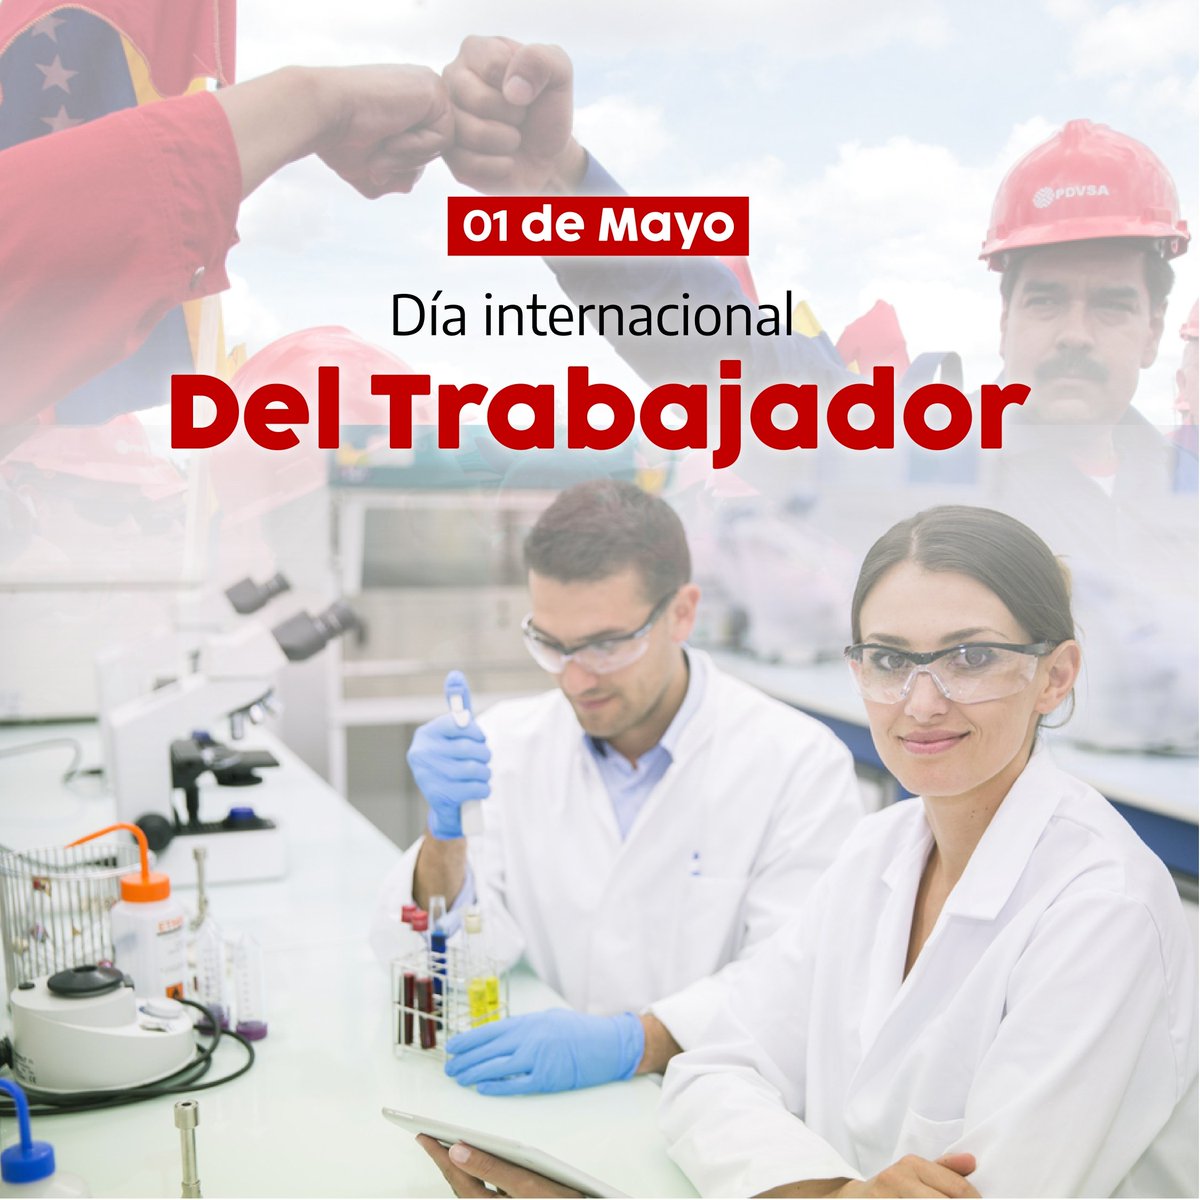 #Efemeride🗓️||#01Mayo Se conmemora mundialmente el Día del Trabajador, en Venezuela reconocemos a la fuerza obrera y laboral, como movimiento reivindicativo de las diferentes causas relacionadas con el trabajo que suman al desarrollo de la patria. 
#TrabajoYPatria 
#DiaDelTrabajo